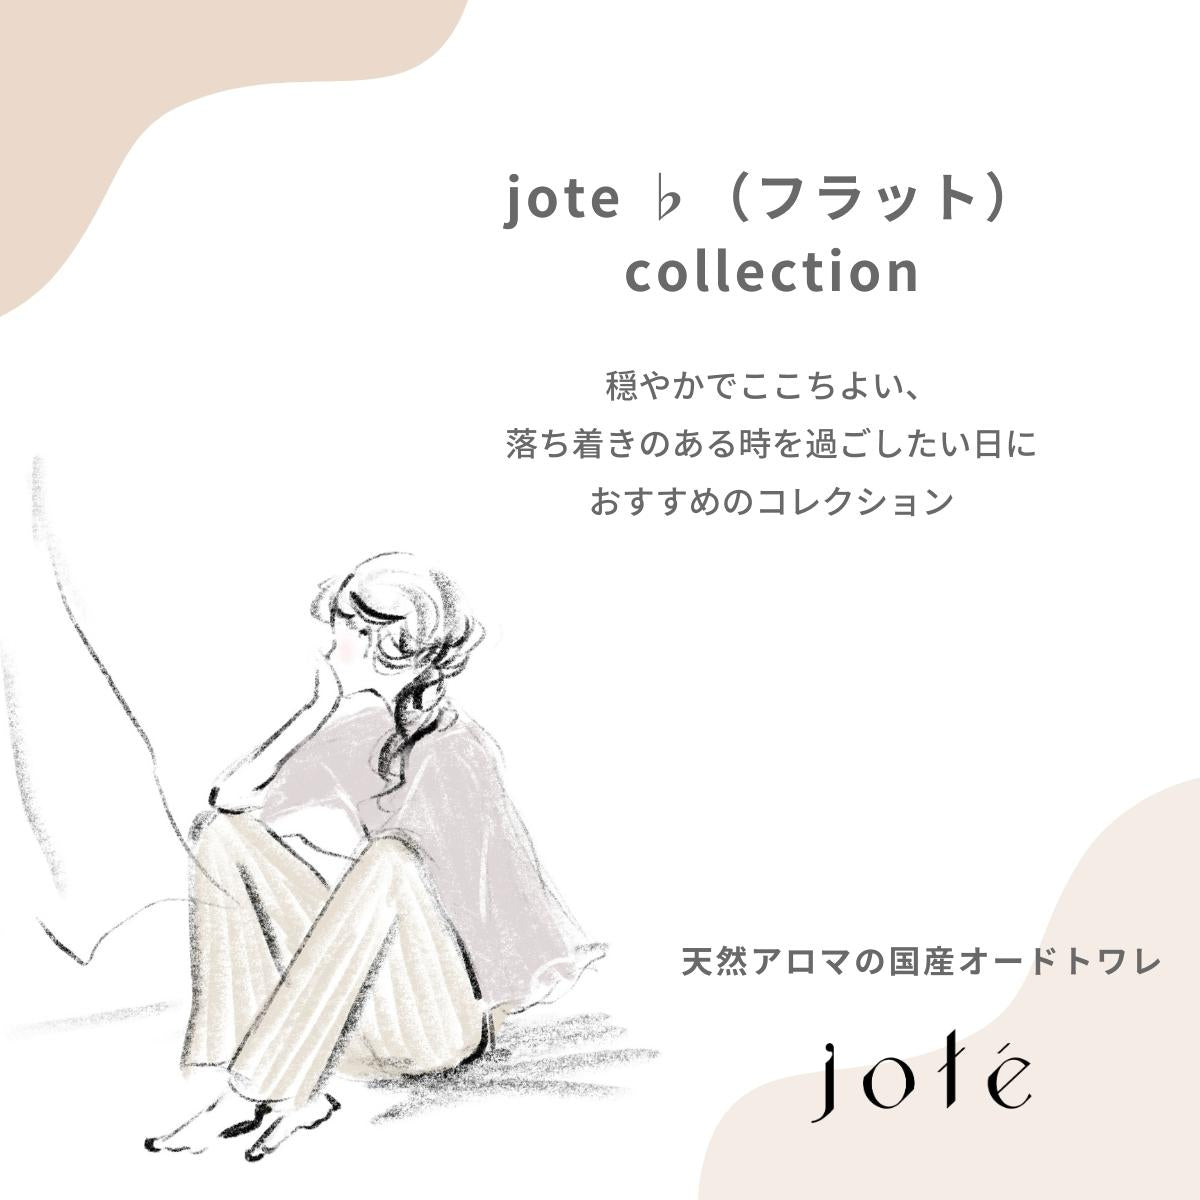 jote ♭2 （フラット2）Oil 20ml 《金木犀の香り》オーガニックホホバ美容オイル スポイトタイプ